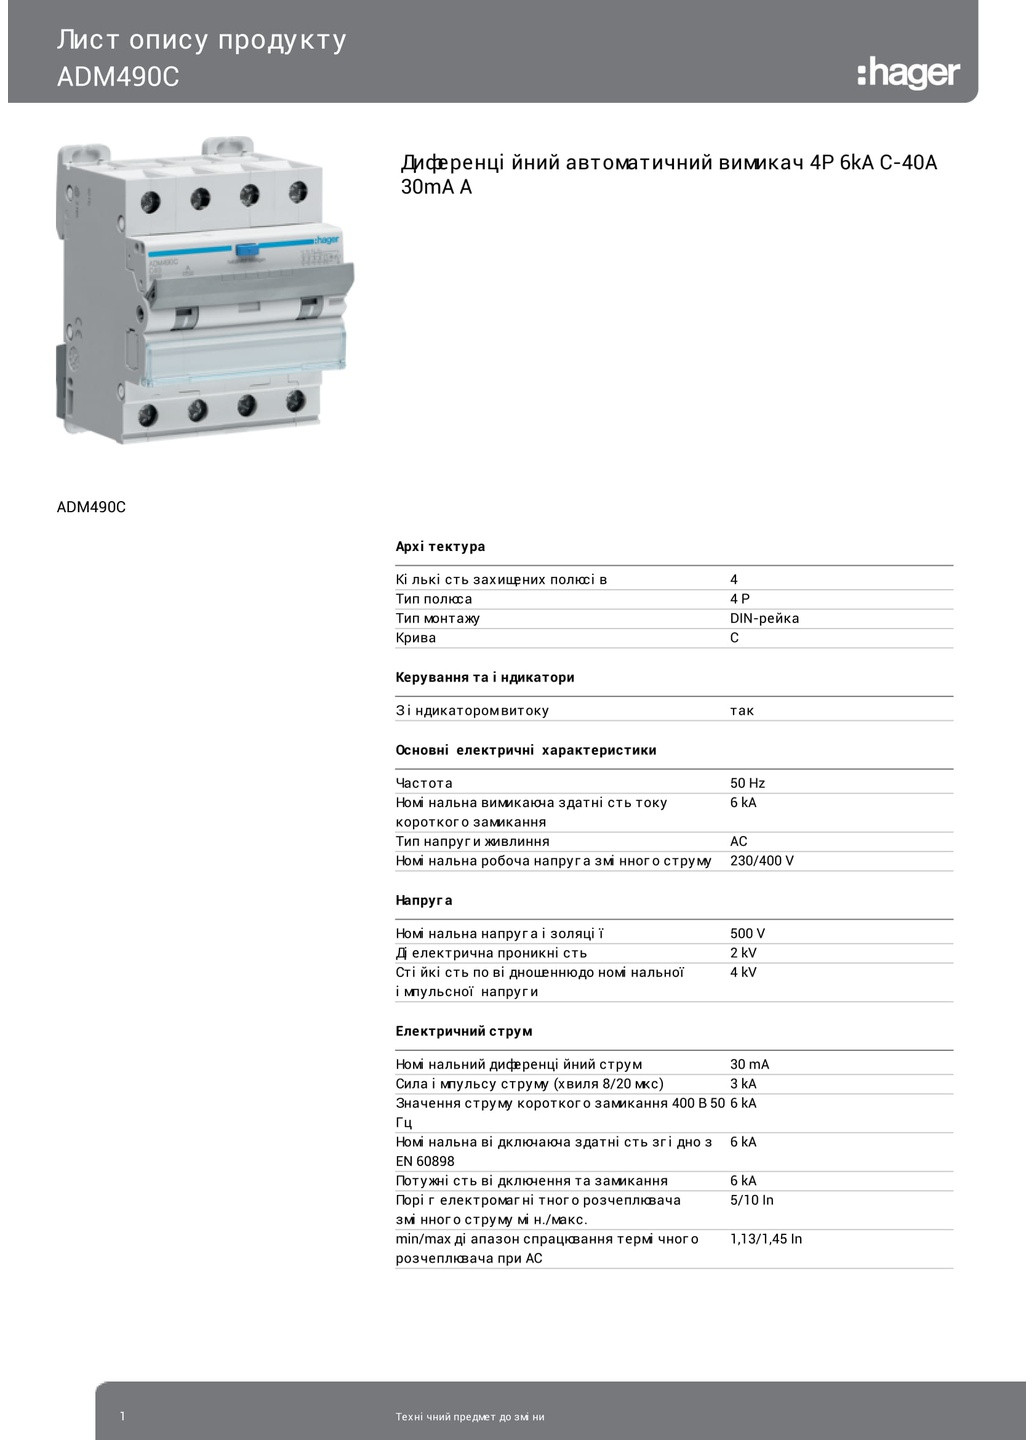 Дифференциальный автоматический выключатель ADM490C 4P 6кА C40A 30mA тип A дифавтомат (3328) Hager (265535708)